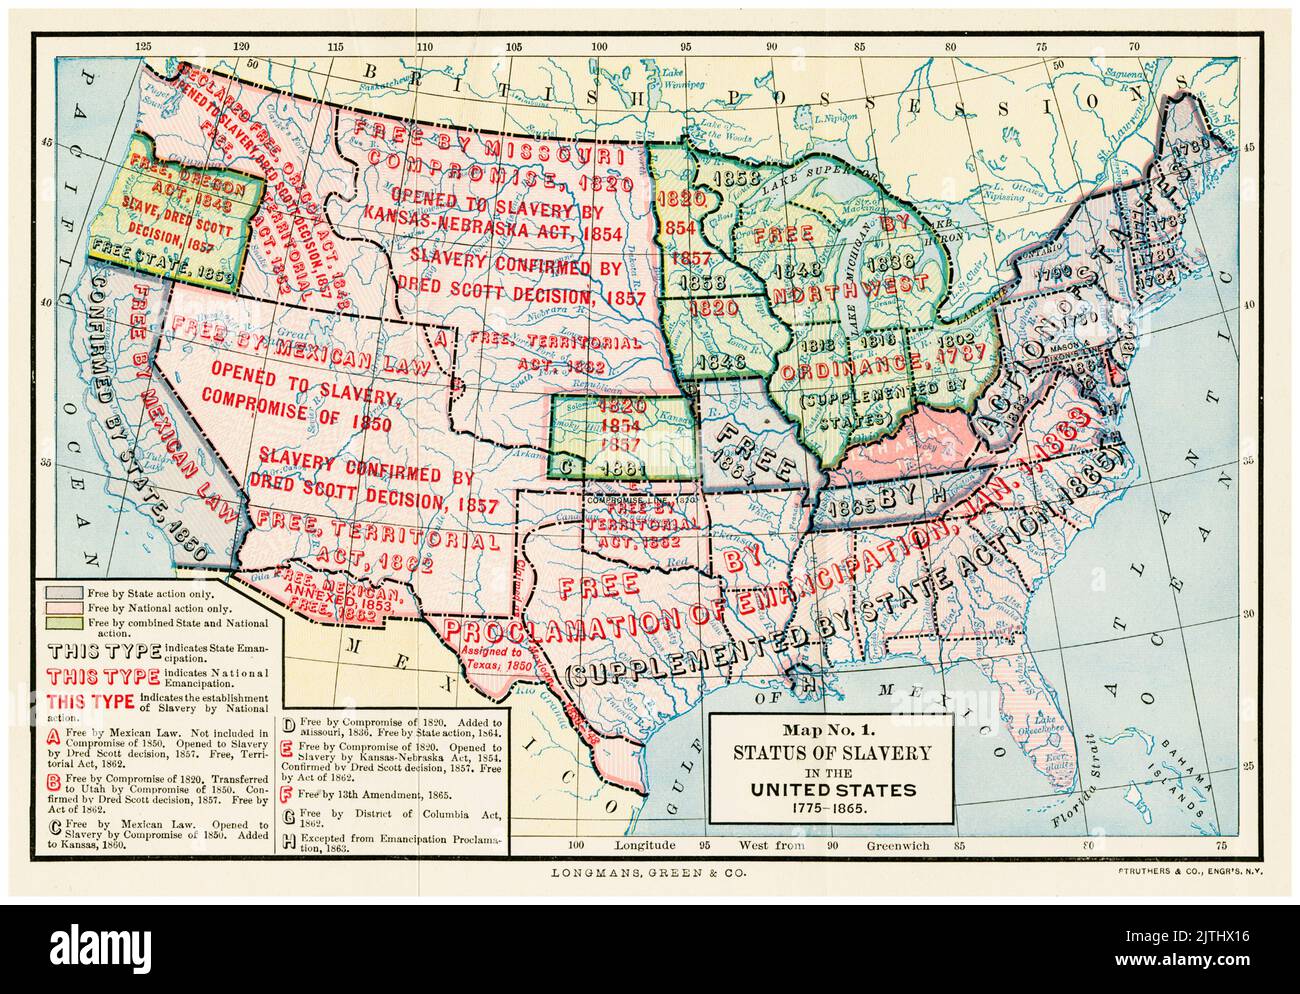 Karte mit dem rechtlichen Status der Sklaverei und des Sklavenhandels in den Vereinigten Staaten von Amerika, 1775-1865, Illustration von Longmans, Green und Co., 1893-1894 Stockfoto